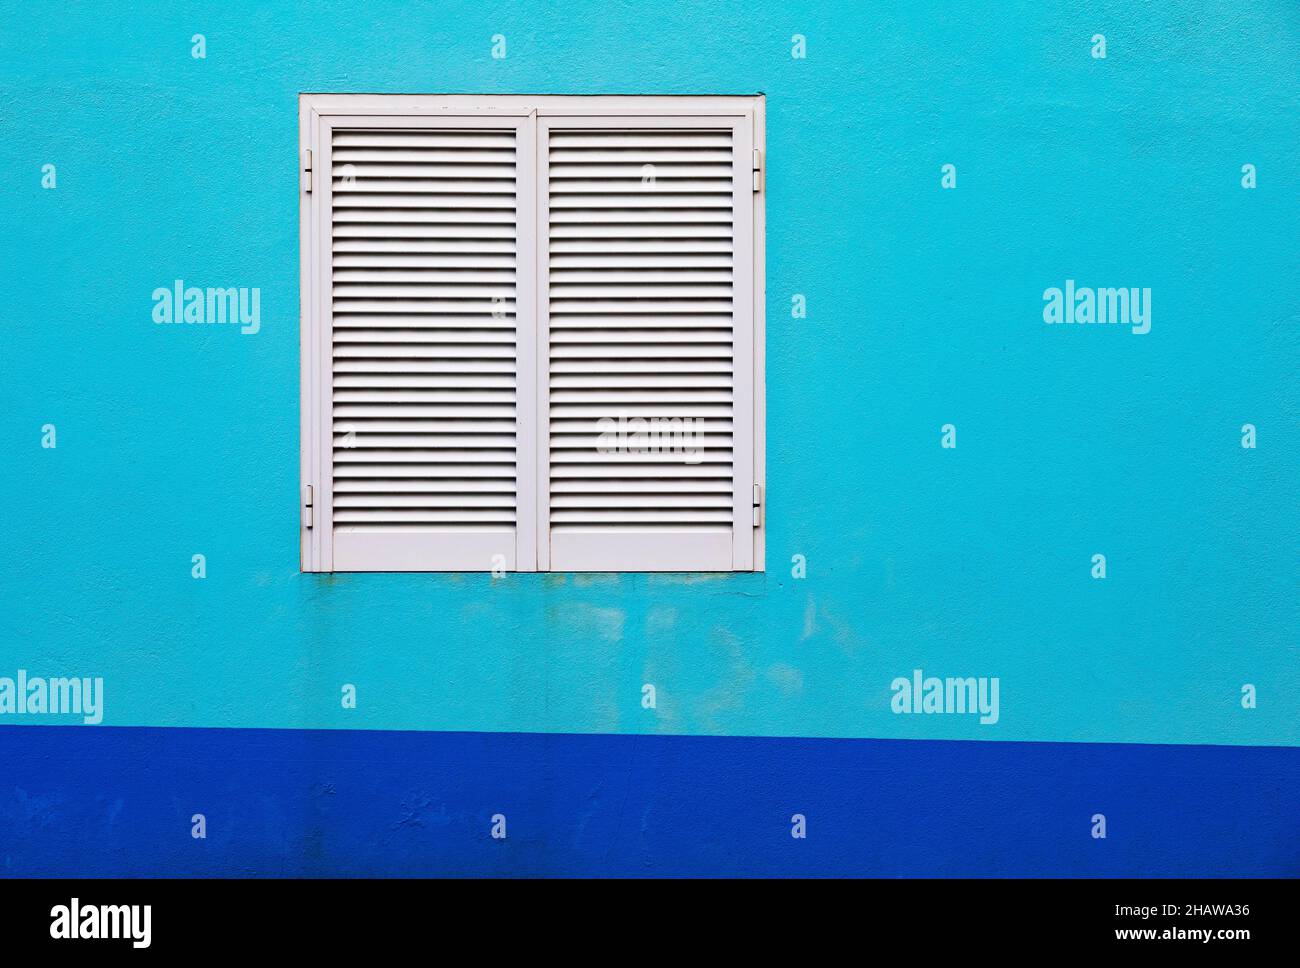 Fachada azul claro de la casa con persianas blancas cerradas, Porto Formoso, Isla de Sao Miguel, Azores, Portugal Foto de stock